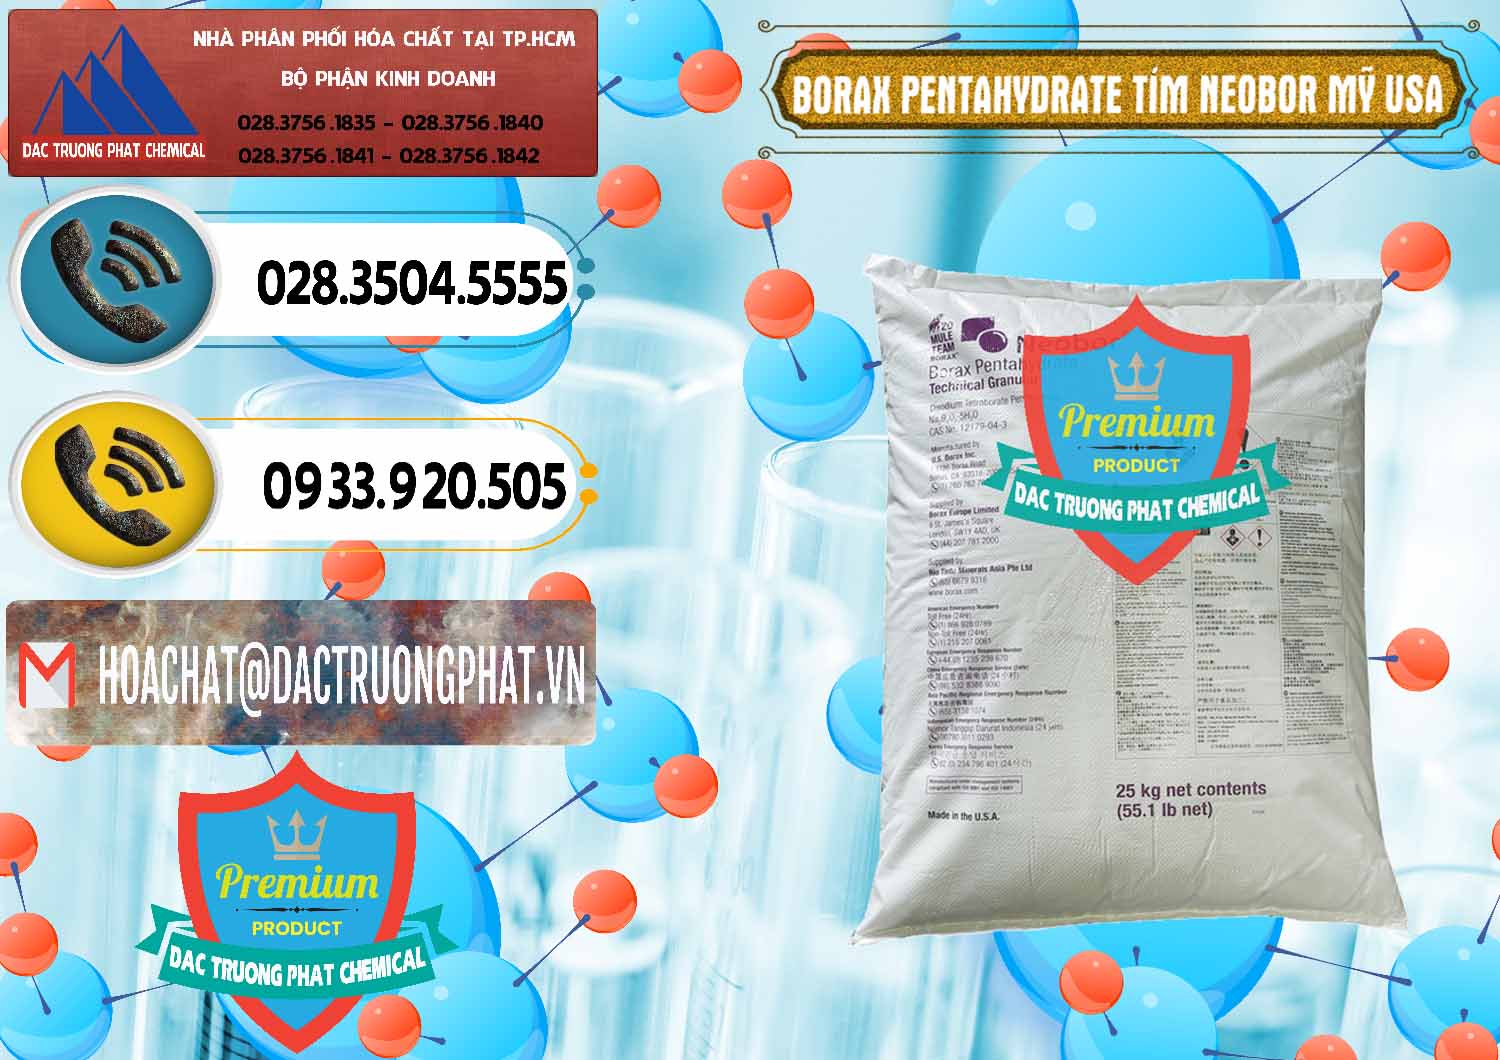 Đơn vị phân phối ( bán ) Borax Pentahydrate Bao Tím Neobor TG Mỹ Usa - 0277 - Công ty chuyên bán và phân phối hóa chất tại TP.HCM - hoachatdetnhuom.vn